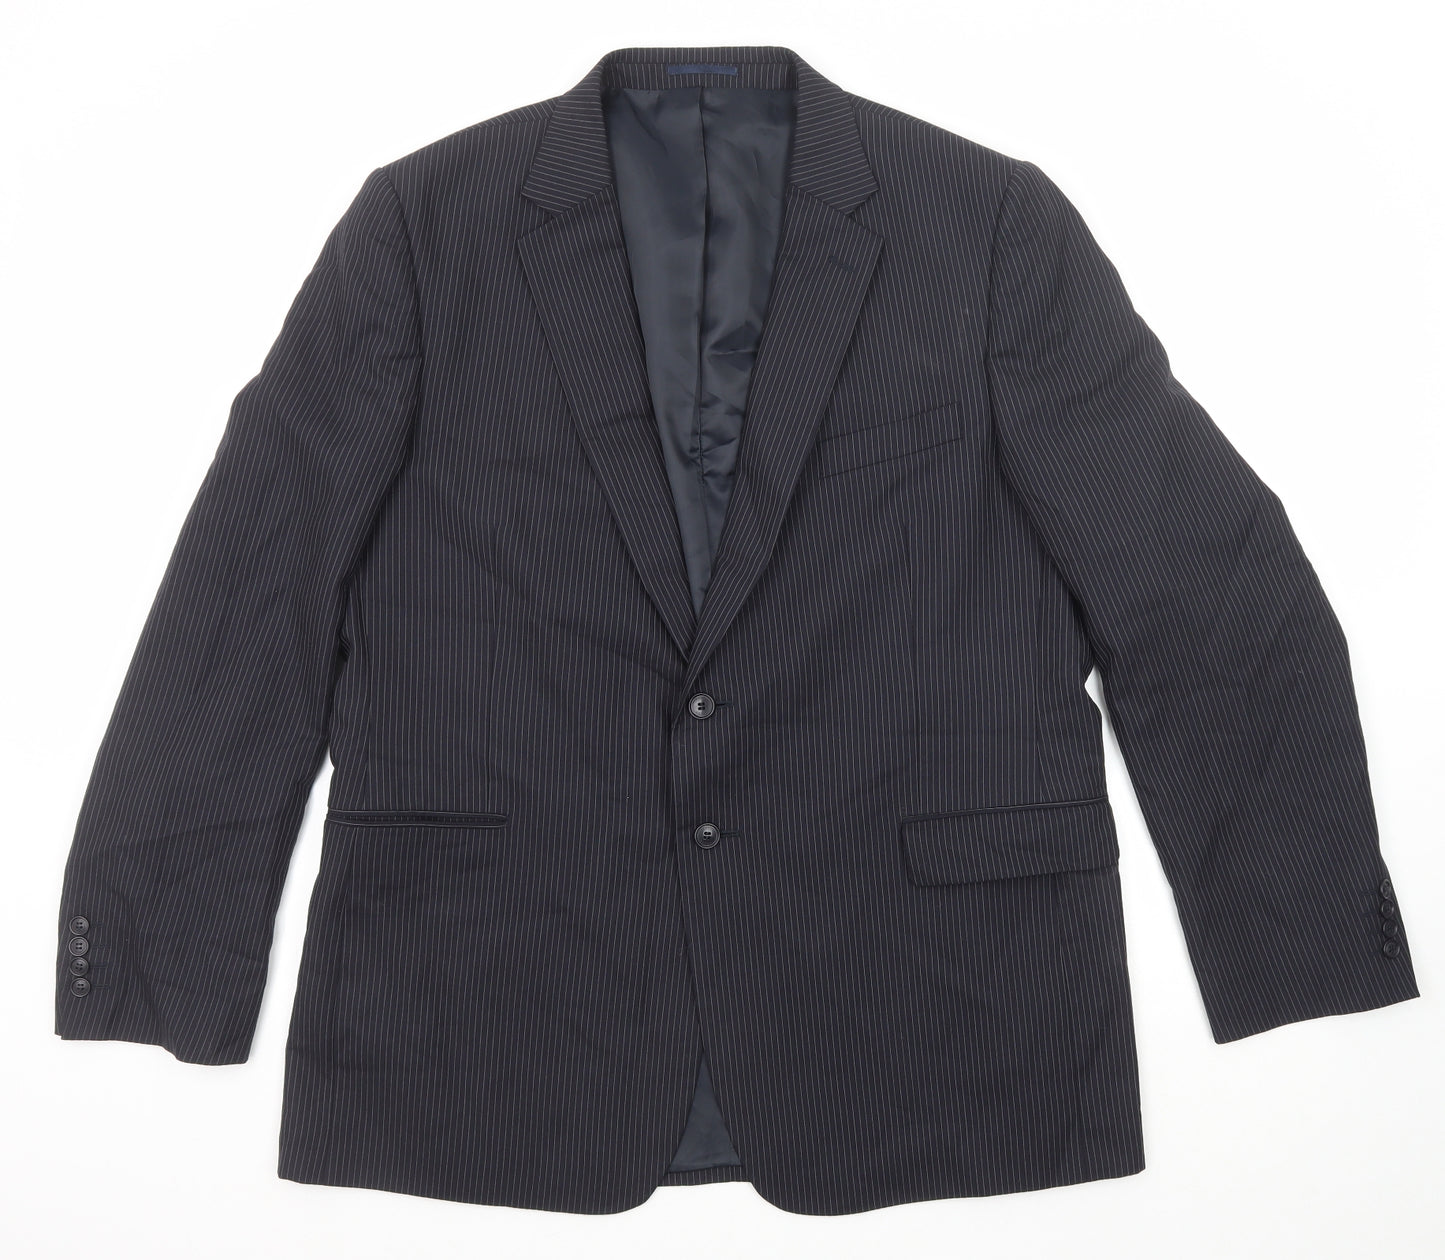 Jaeger Mens Black Striped Wool Jacket Suit Jacket Size 46 Regular